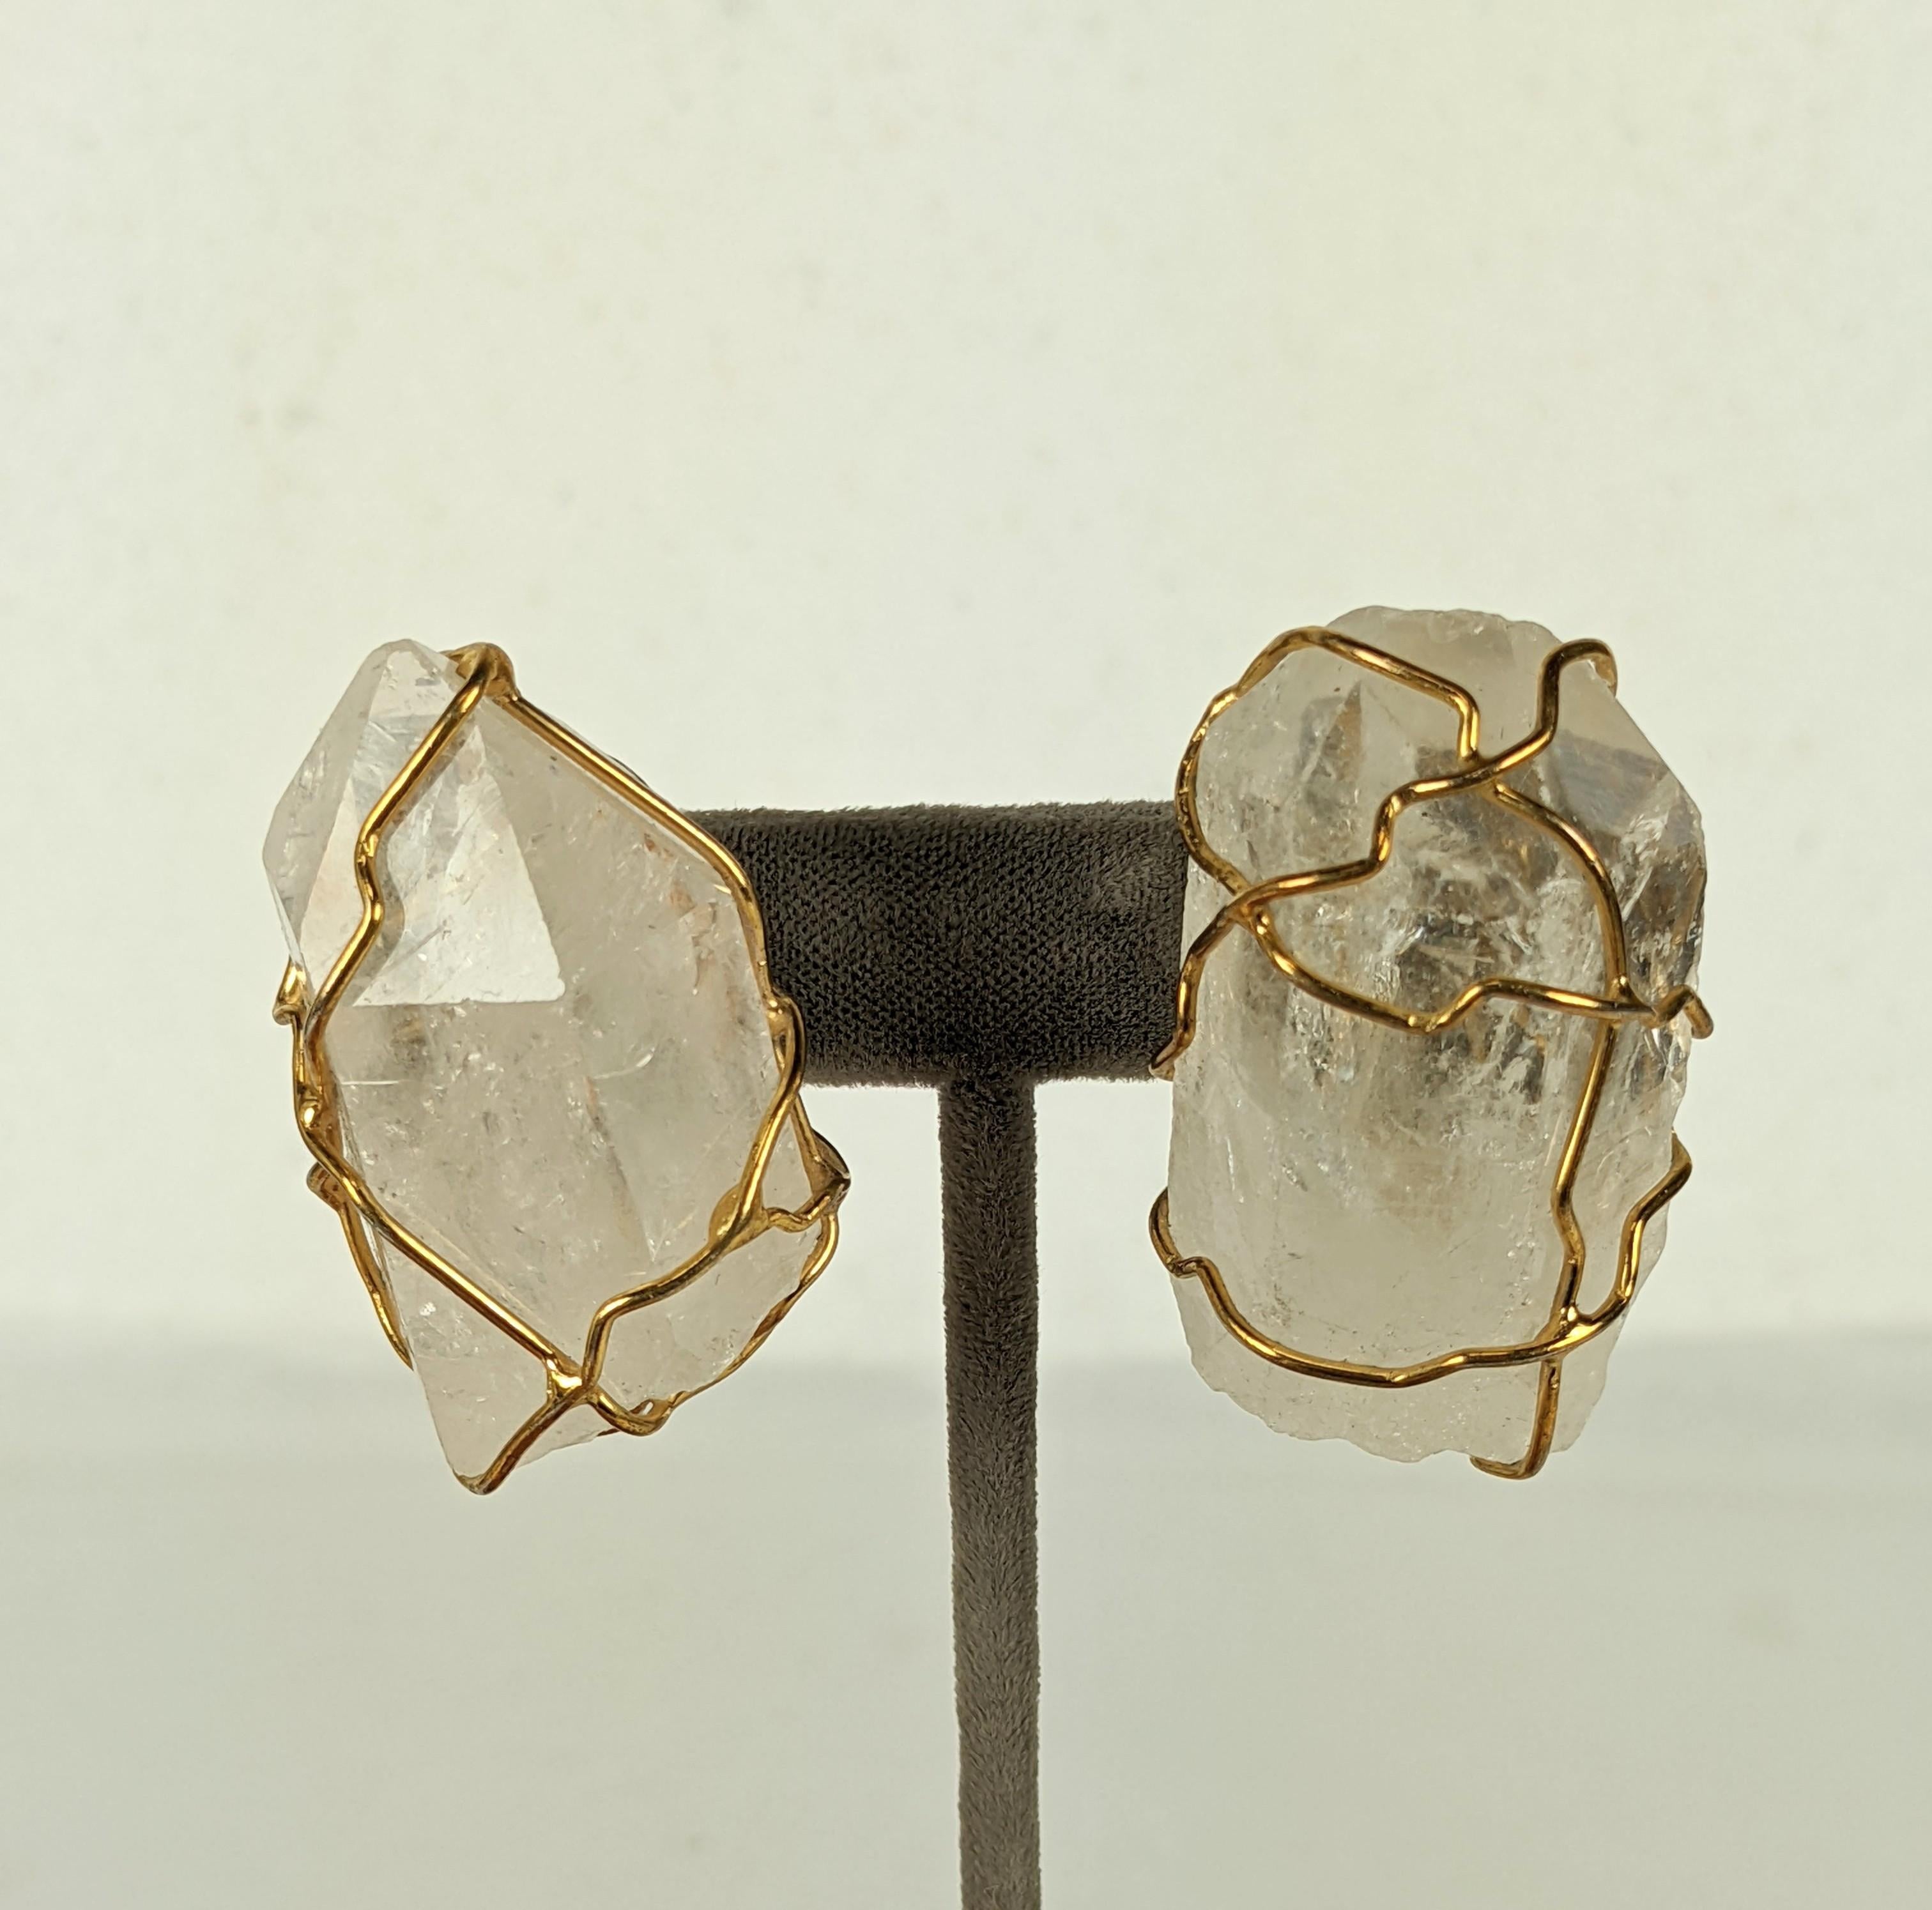 Magnifiques boucles d'oreilles en cristal de roche de la Maison Goossens pour Yves Saint Laurent datant de la fin des années 1980. De grands cristaux de roche naturels sont entourés d'un fil d'or pour former cet incroyable motif emblématique.